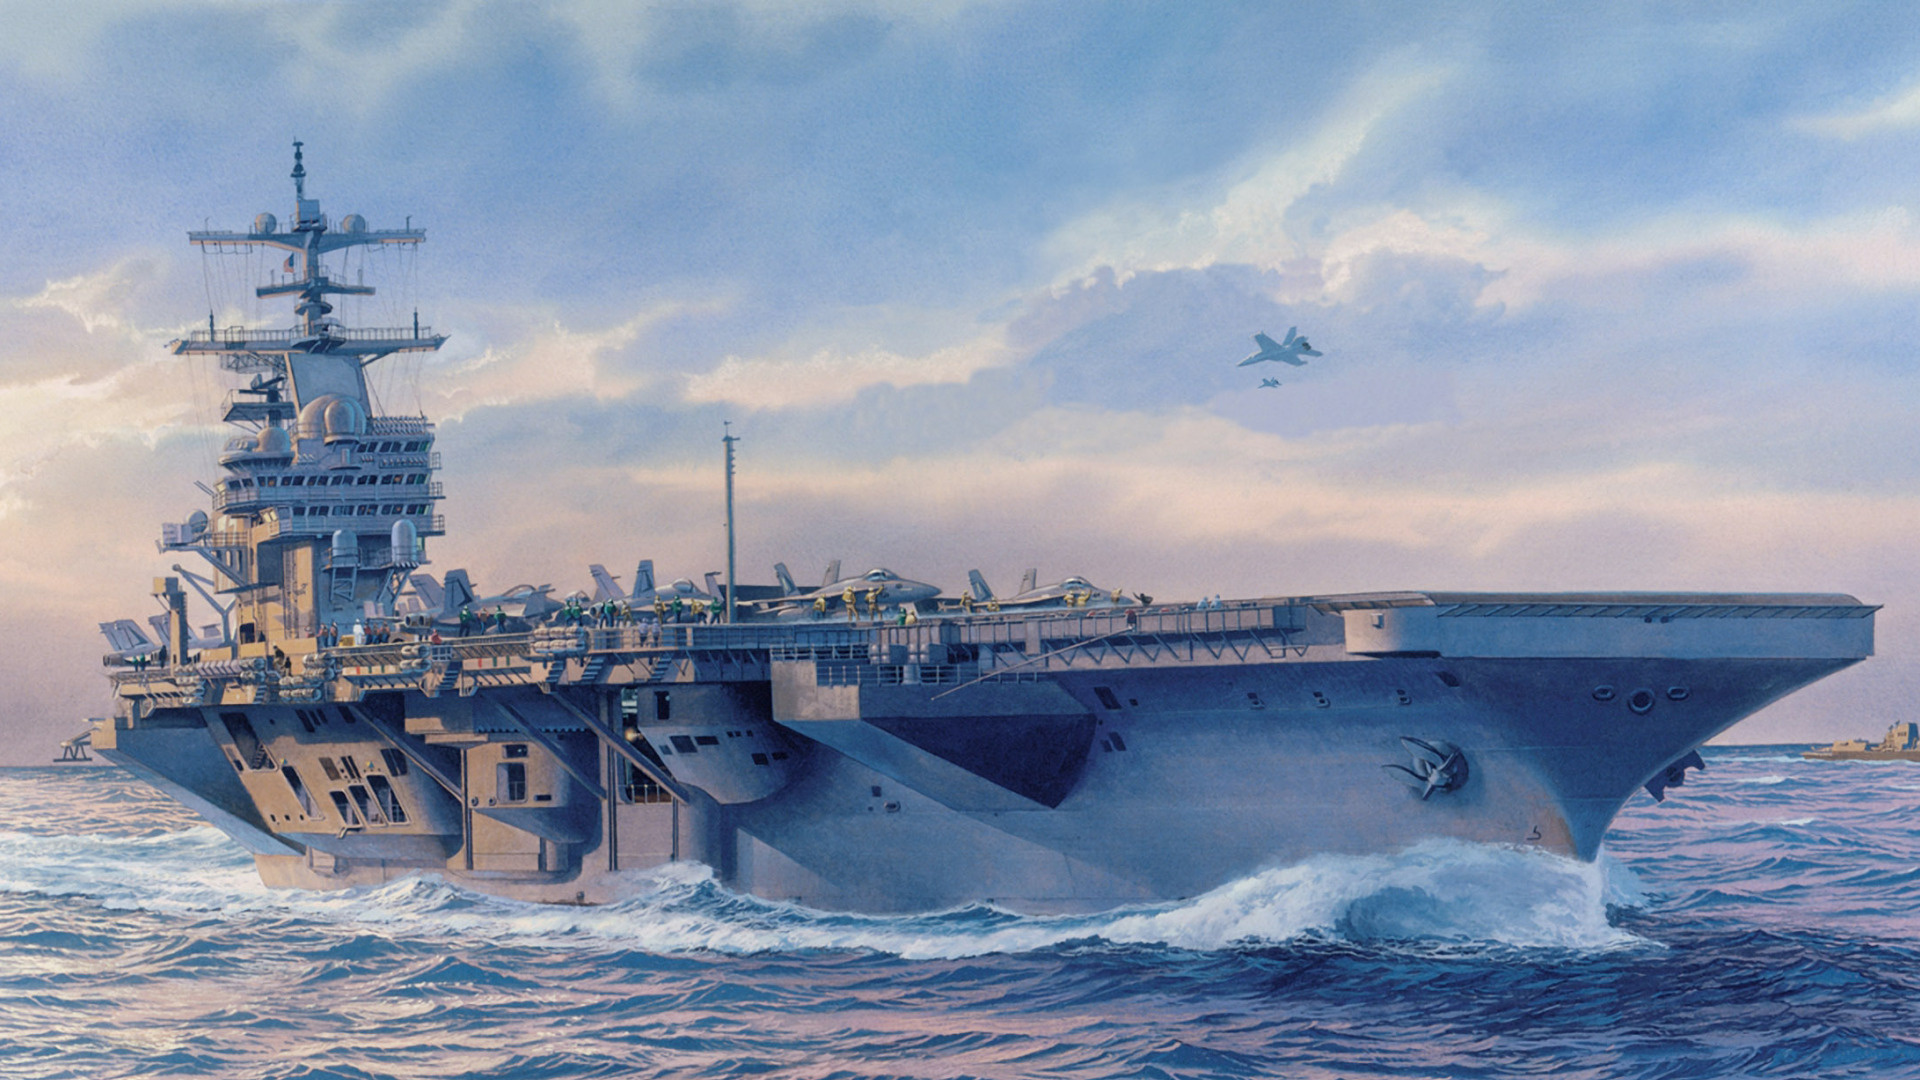 Flugzeugträger, Schiff, USS George HW Bush, Kriegsschiff, Marine-Schiff. Wallpaper in 1920x1080 Resolution